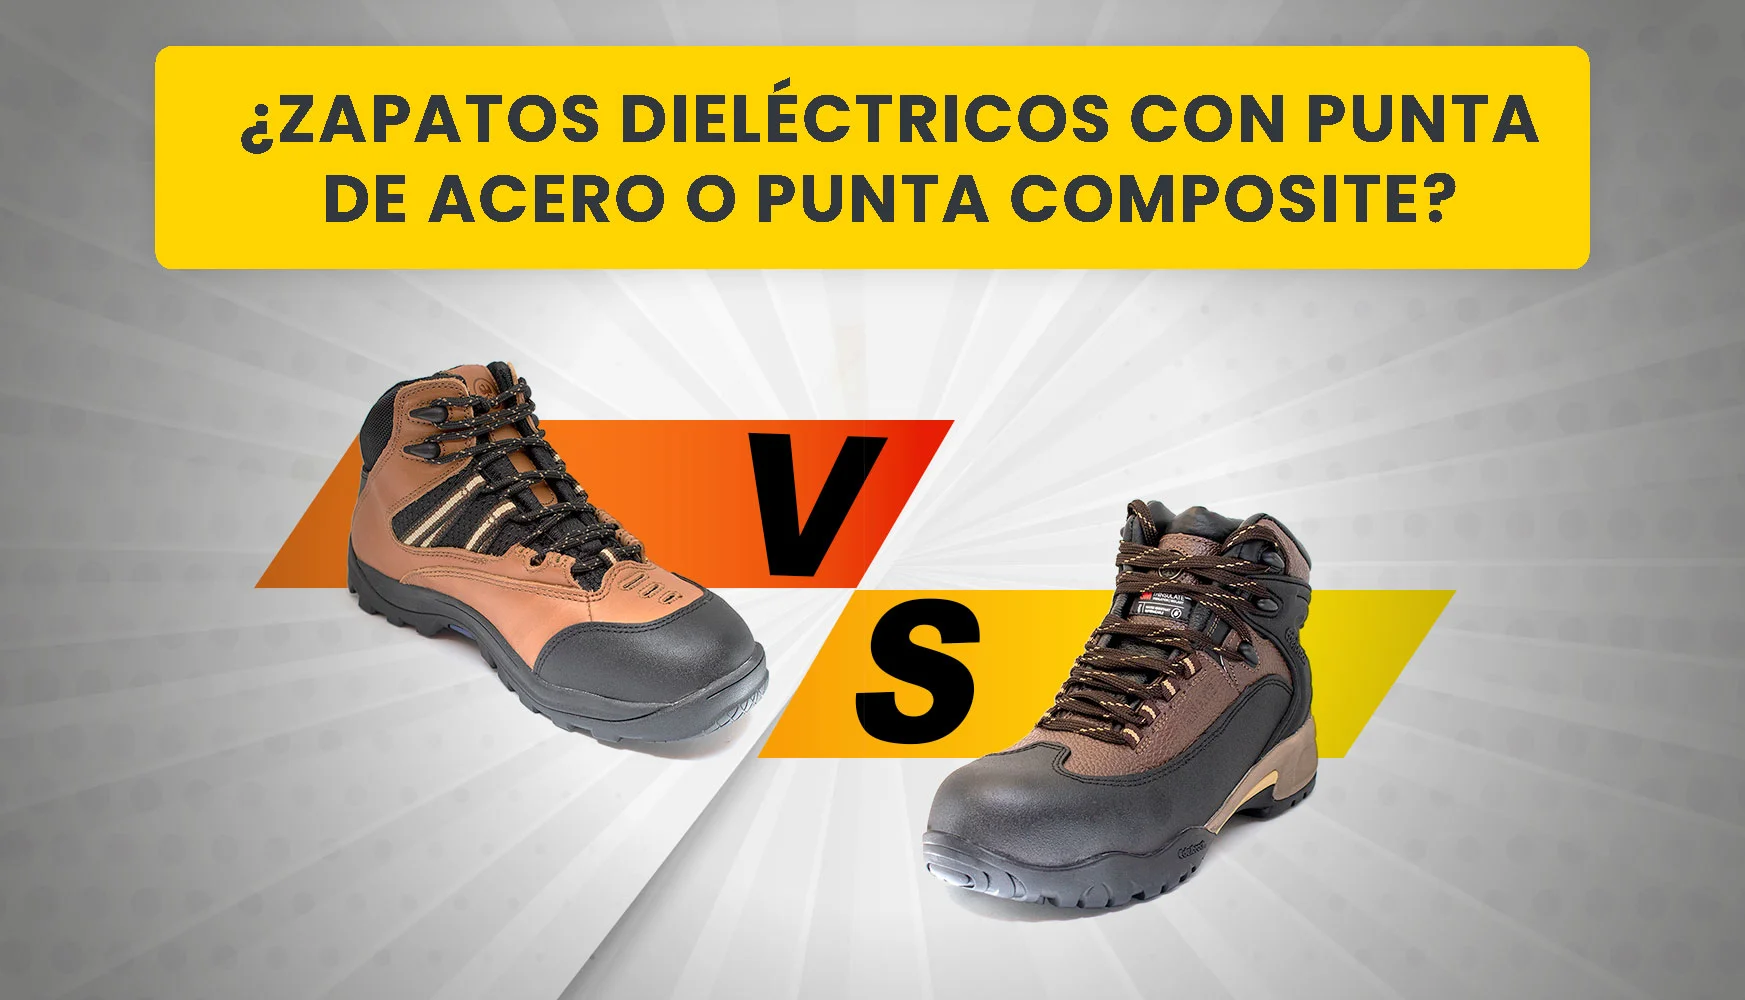 Zapatos dieléctricos con punta de acero o punta composite? ¿Cuál es Segurimax